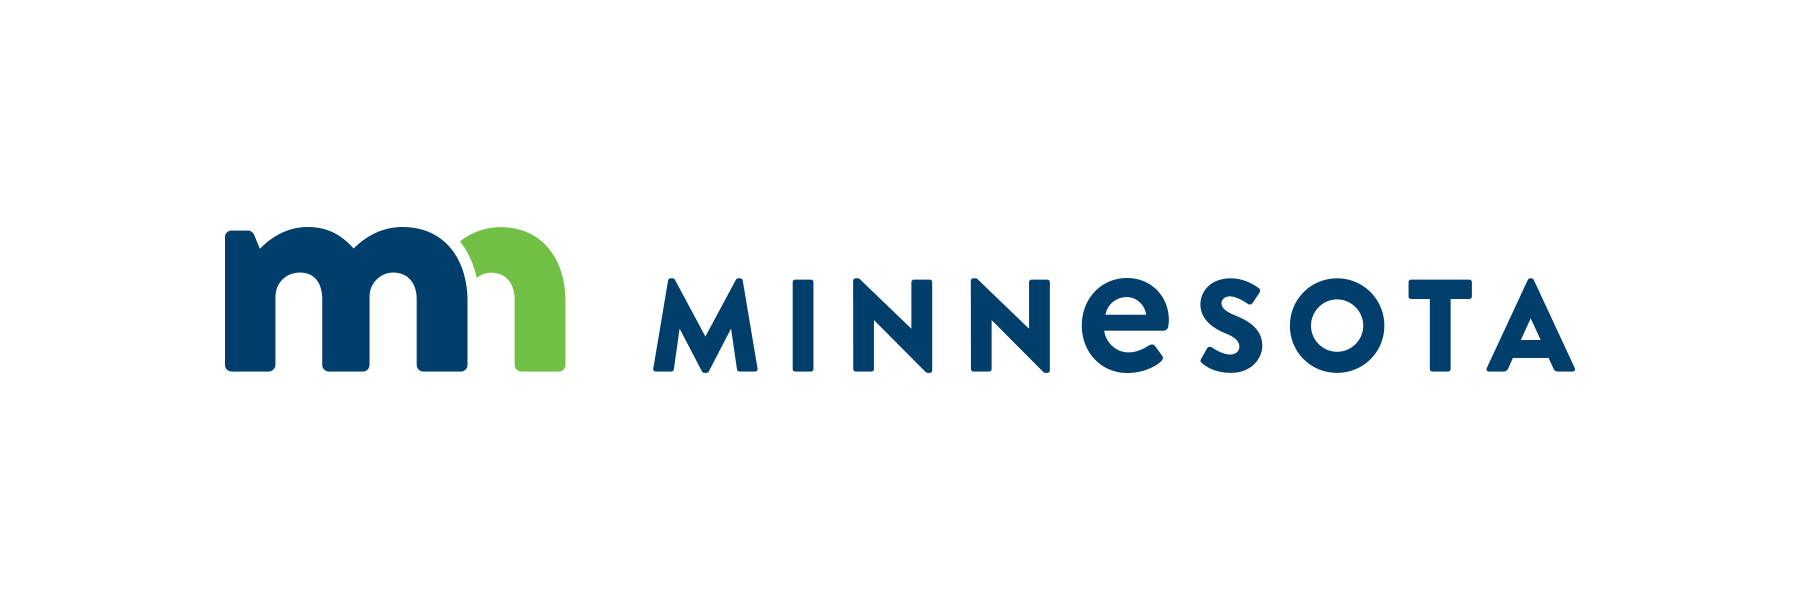 Minnesota Logo - MnDOT Logo - MnDOT Media Room